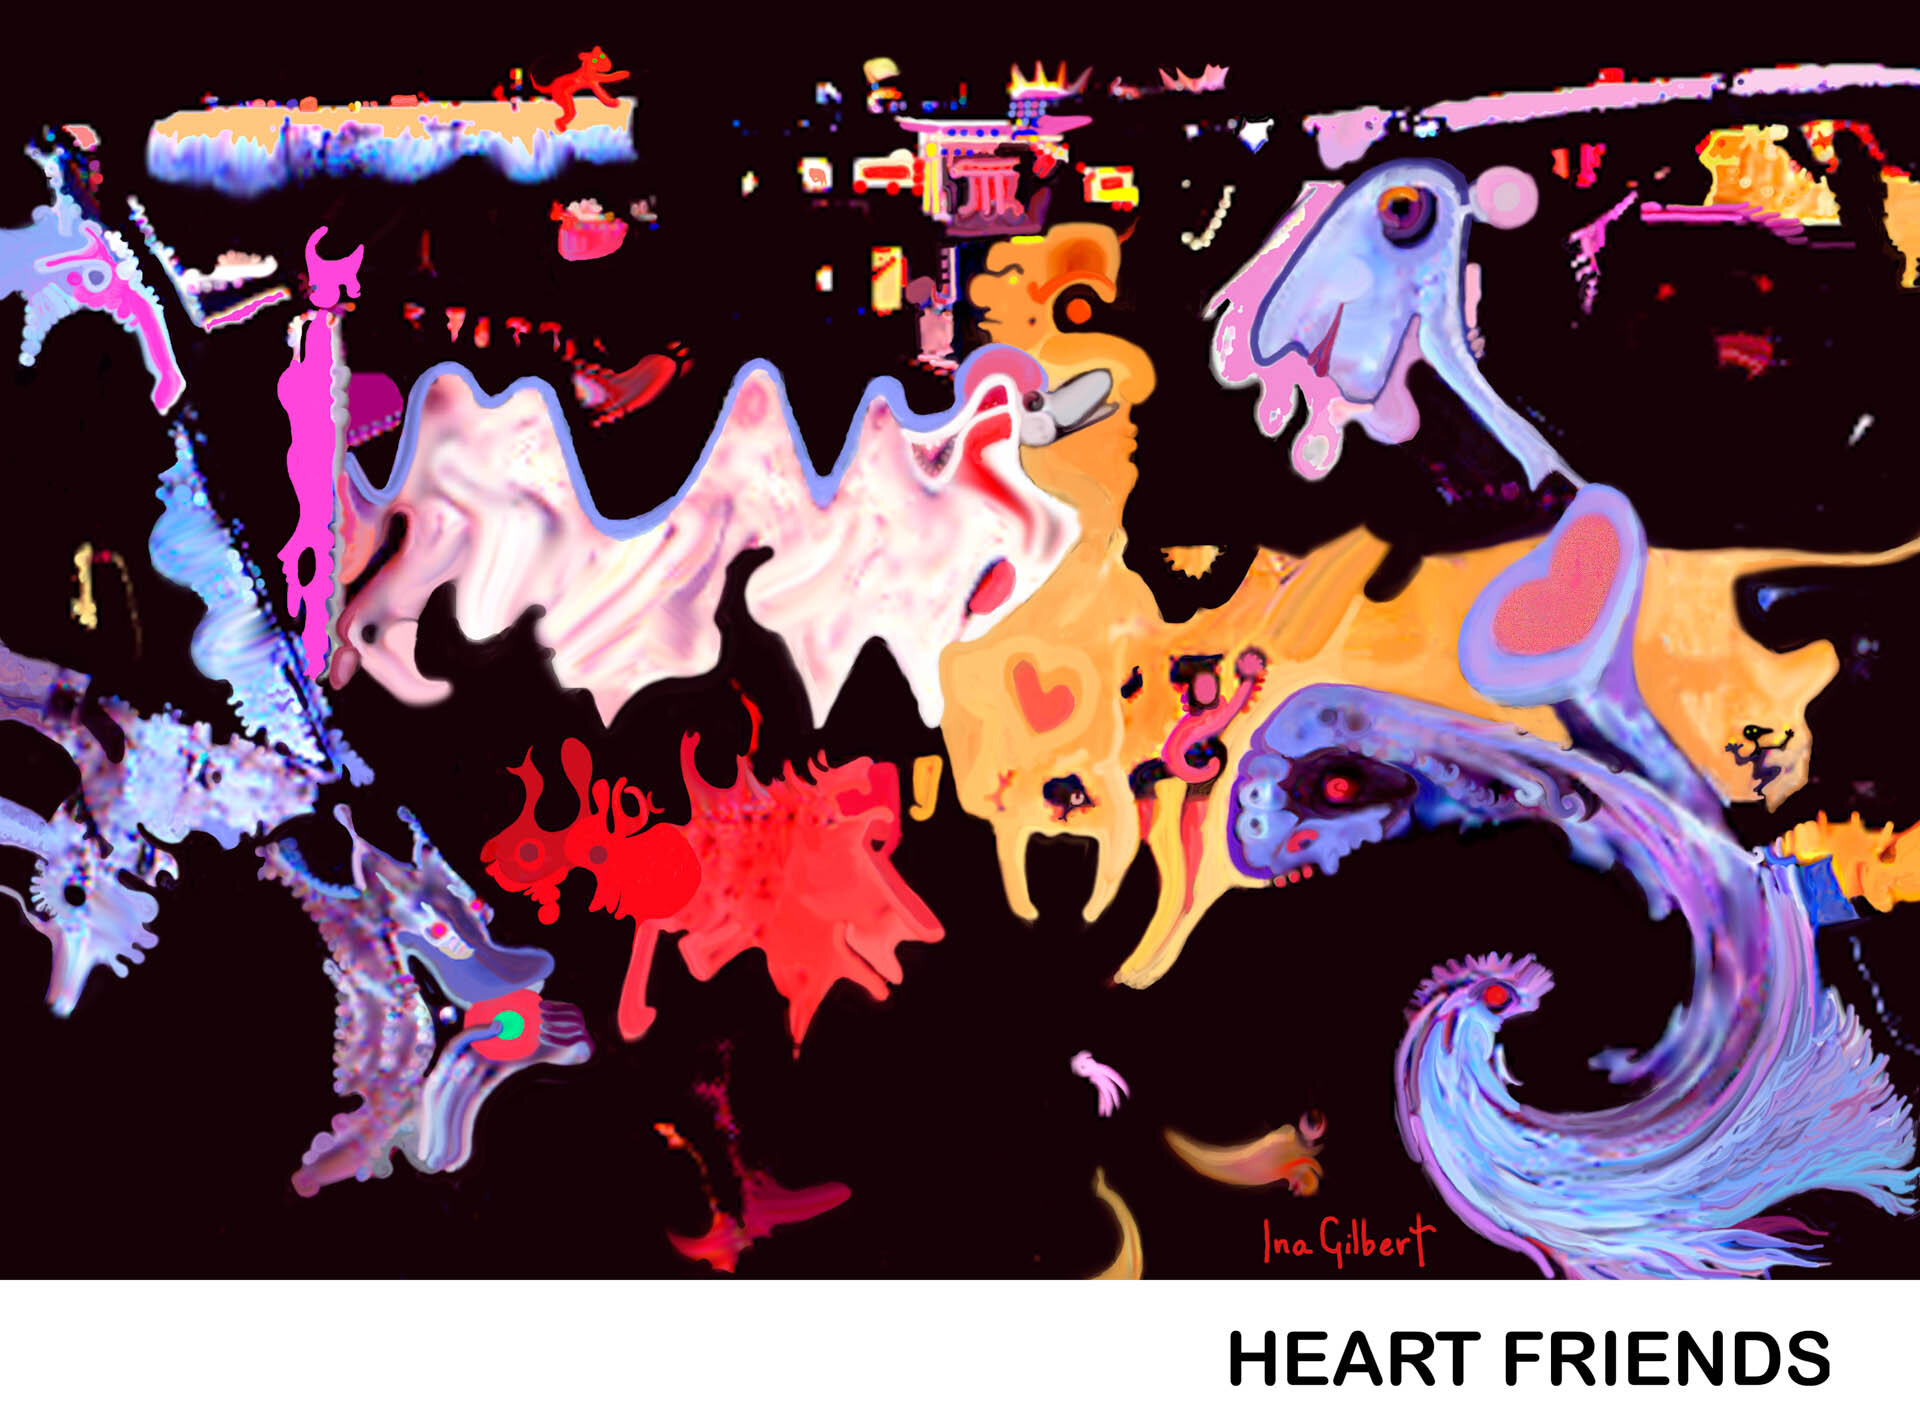 Heart-Friends'95-15_ as Smart Object-1 Titled.jpg